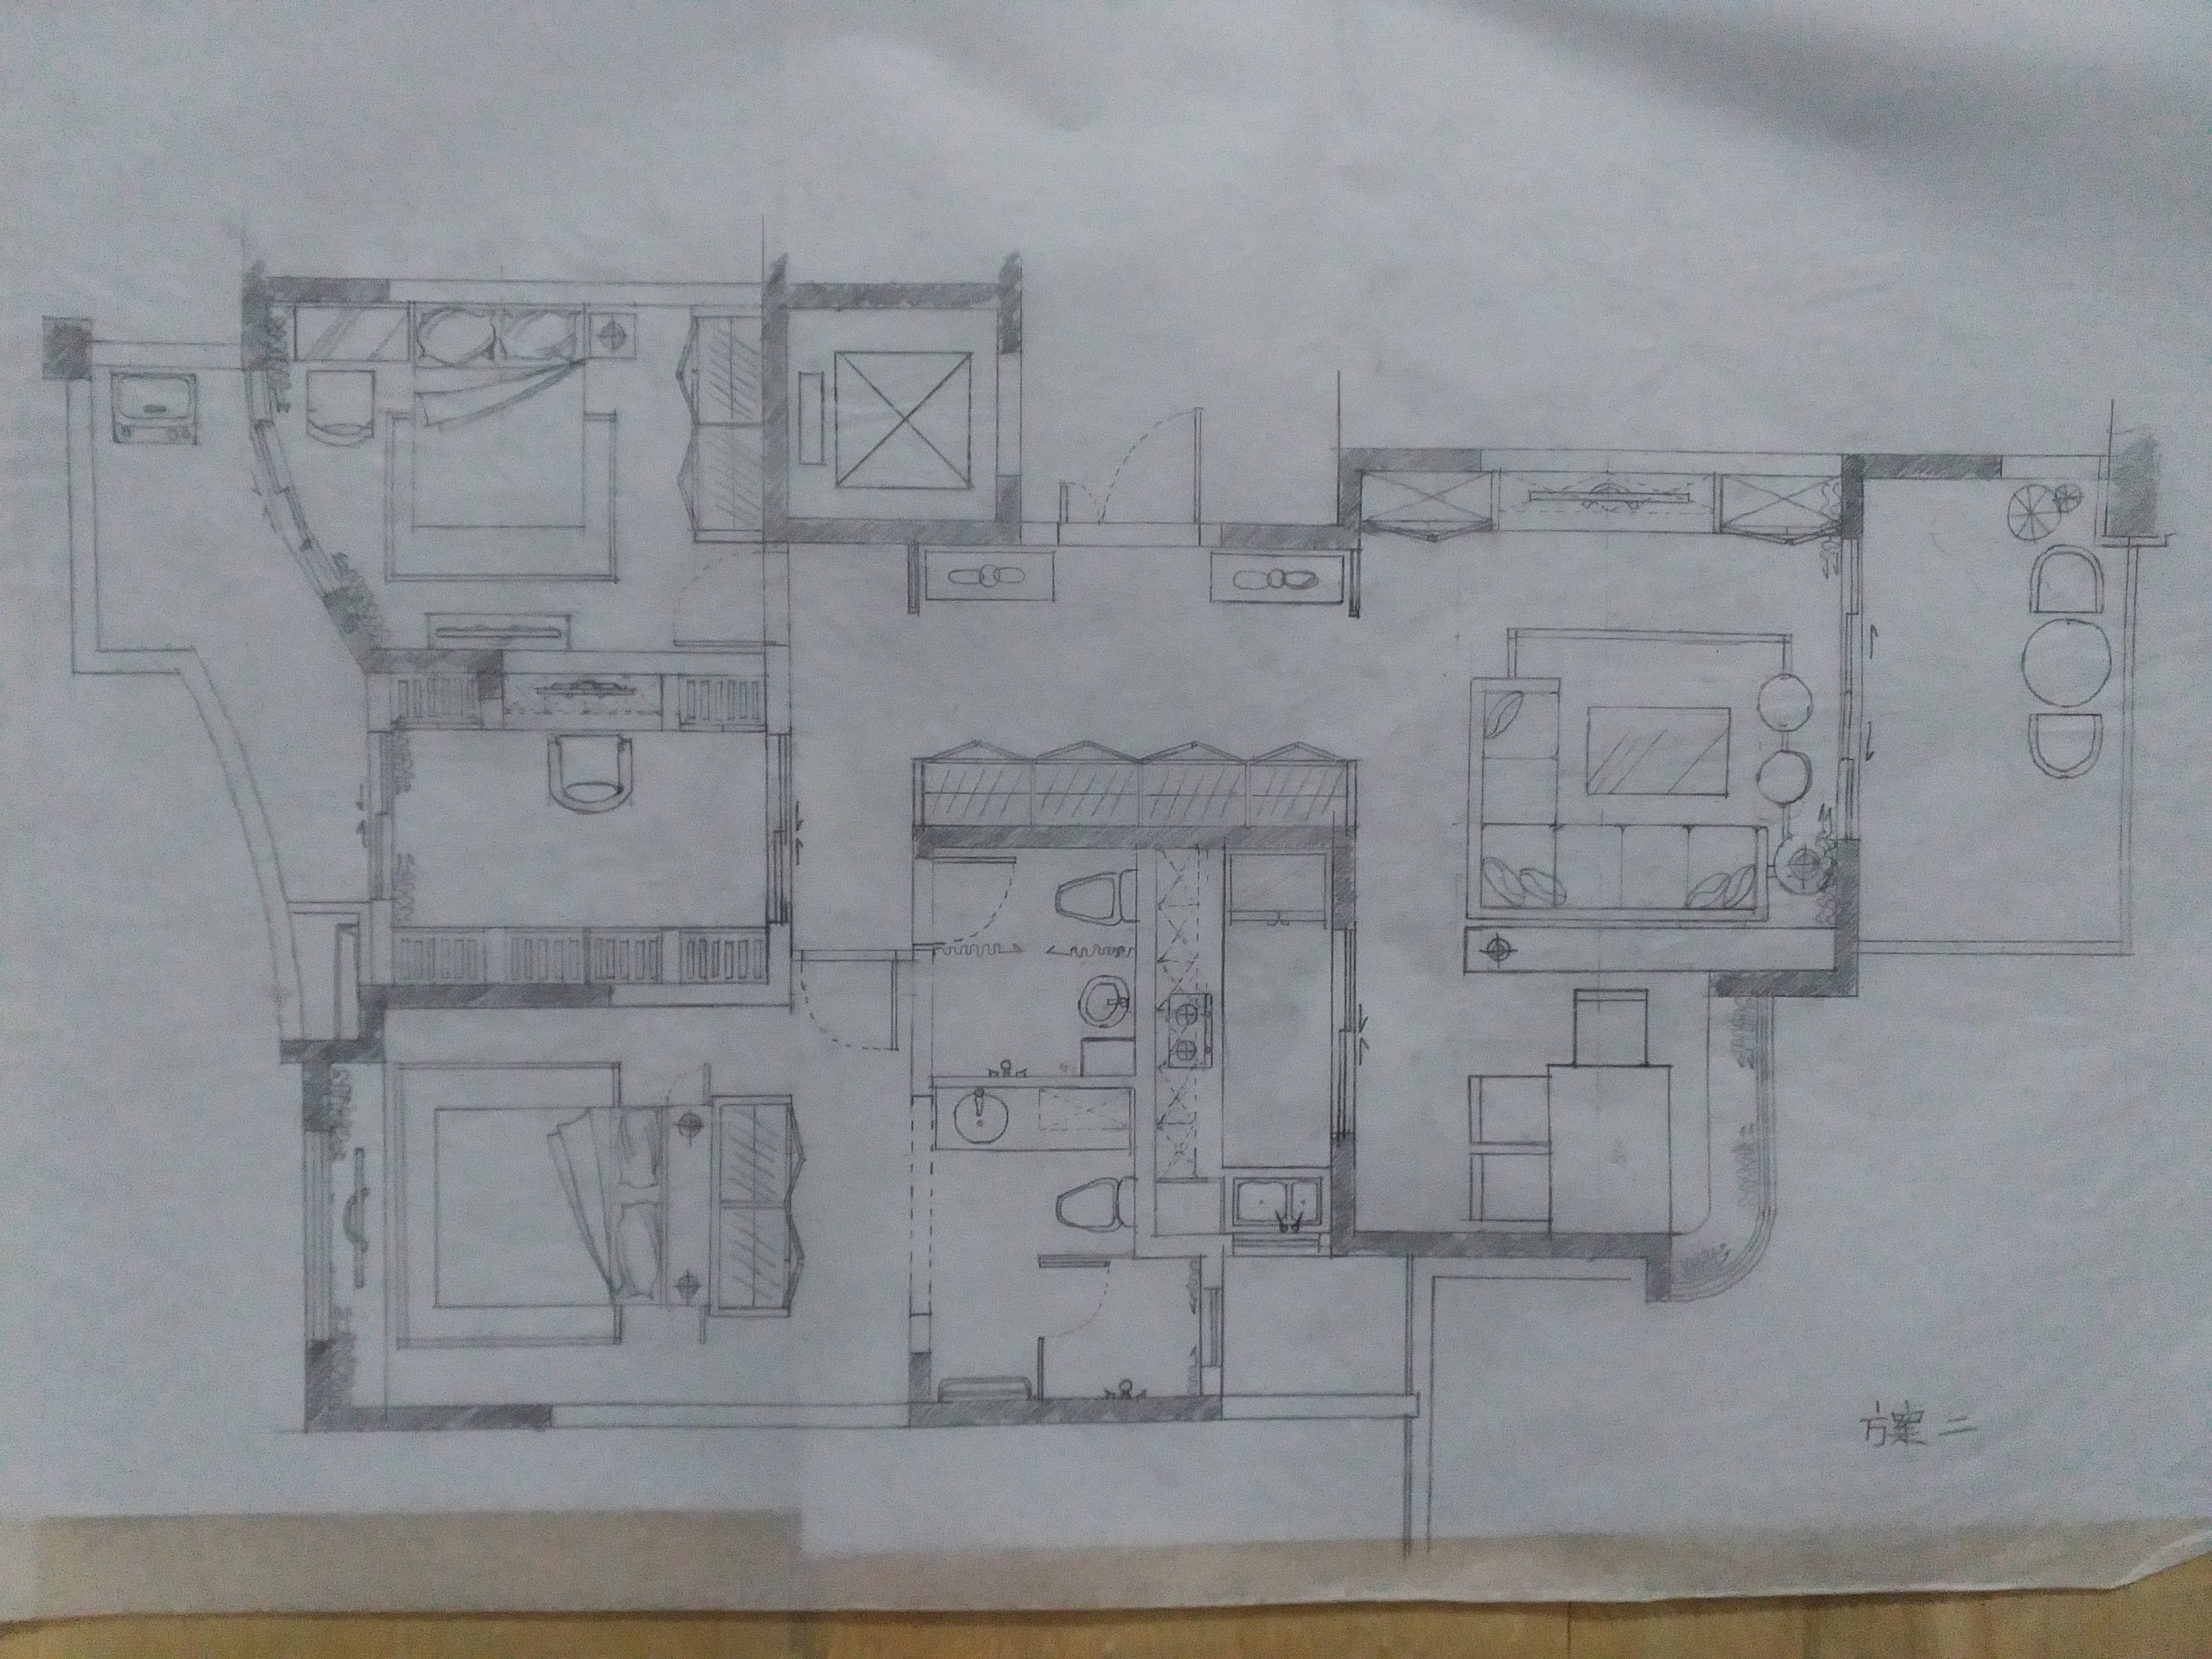 房屋平面设计图手绘图片